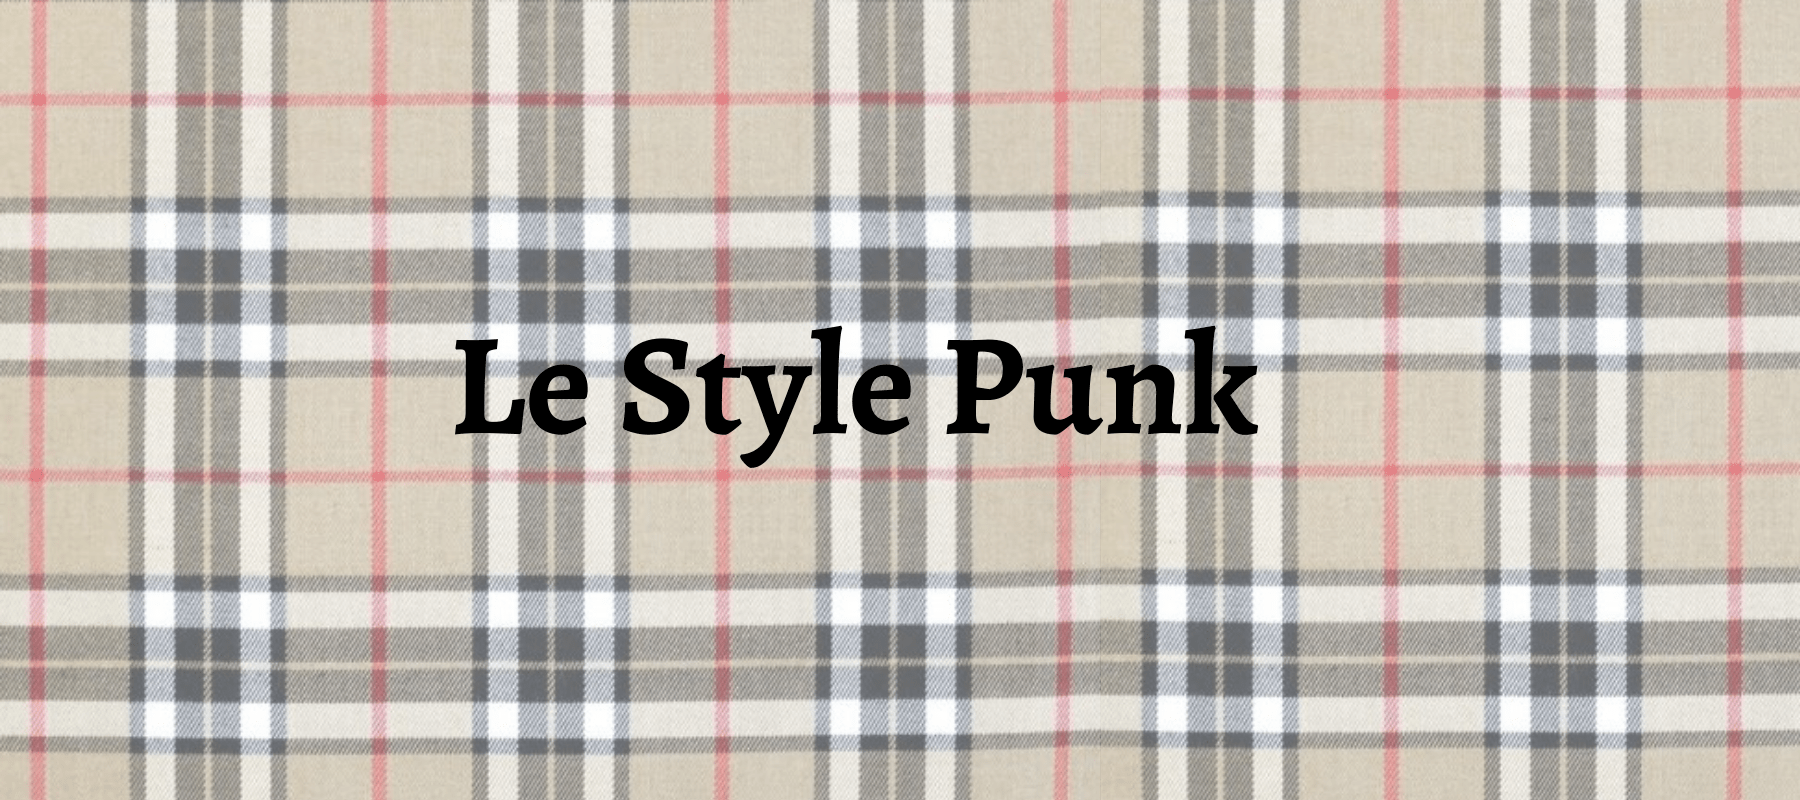 Comment avoir un style punk ?